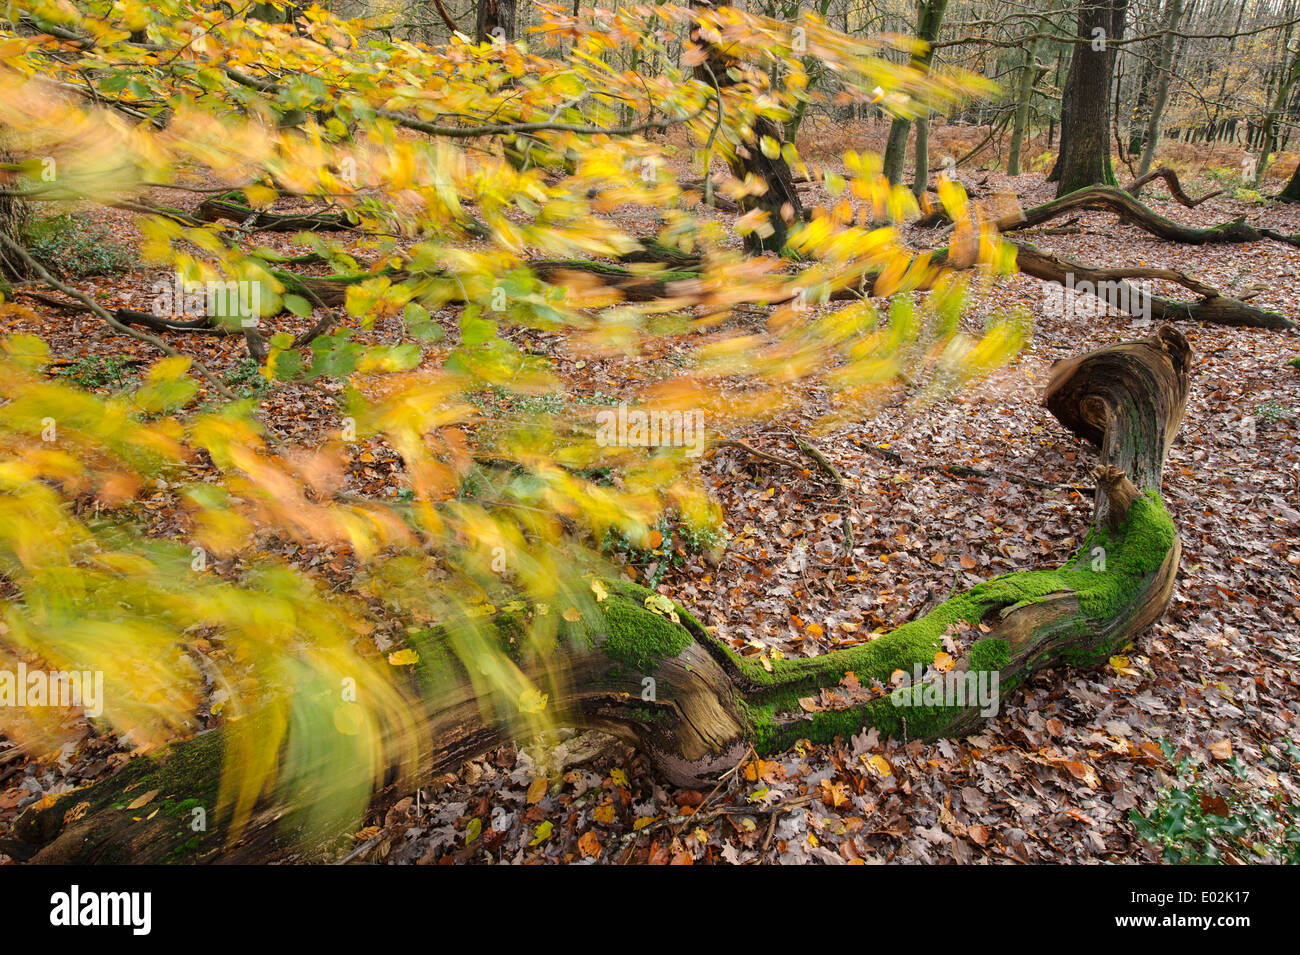 deadwood in herrenholz nature reserve, vechta district, niedersachsen, germany Stock Photo